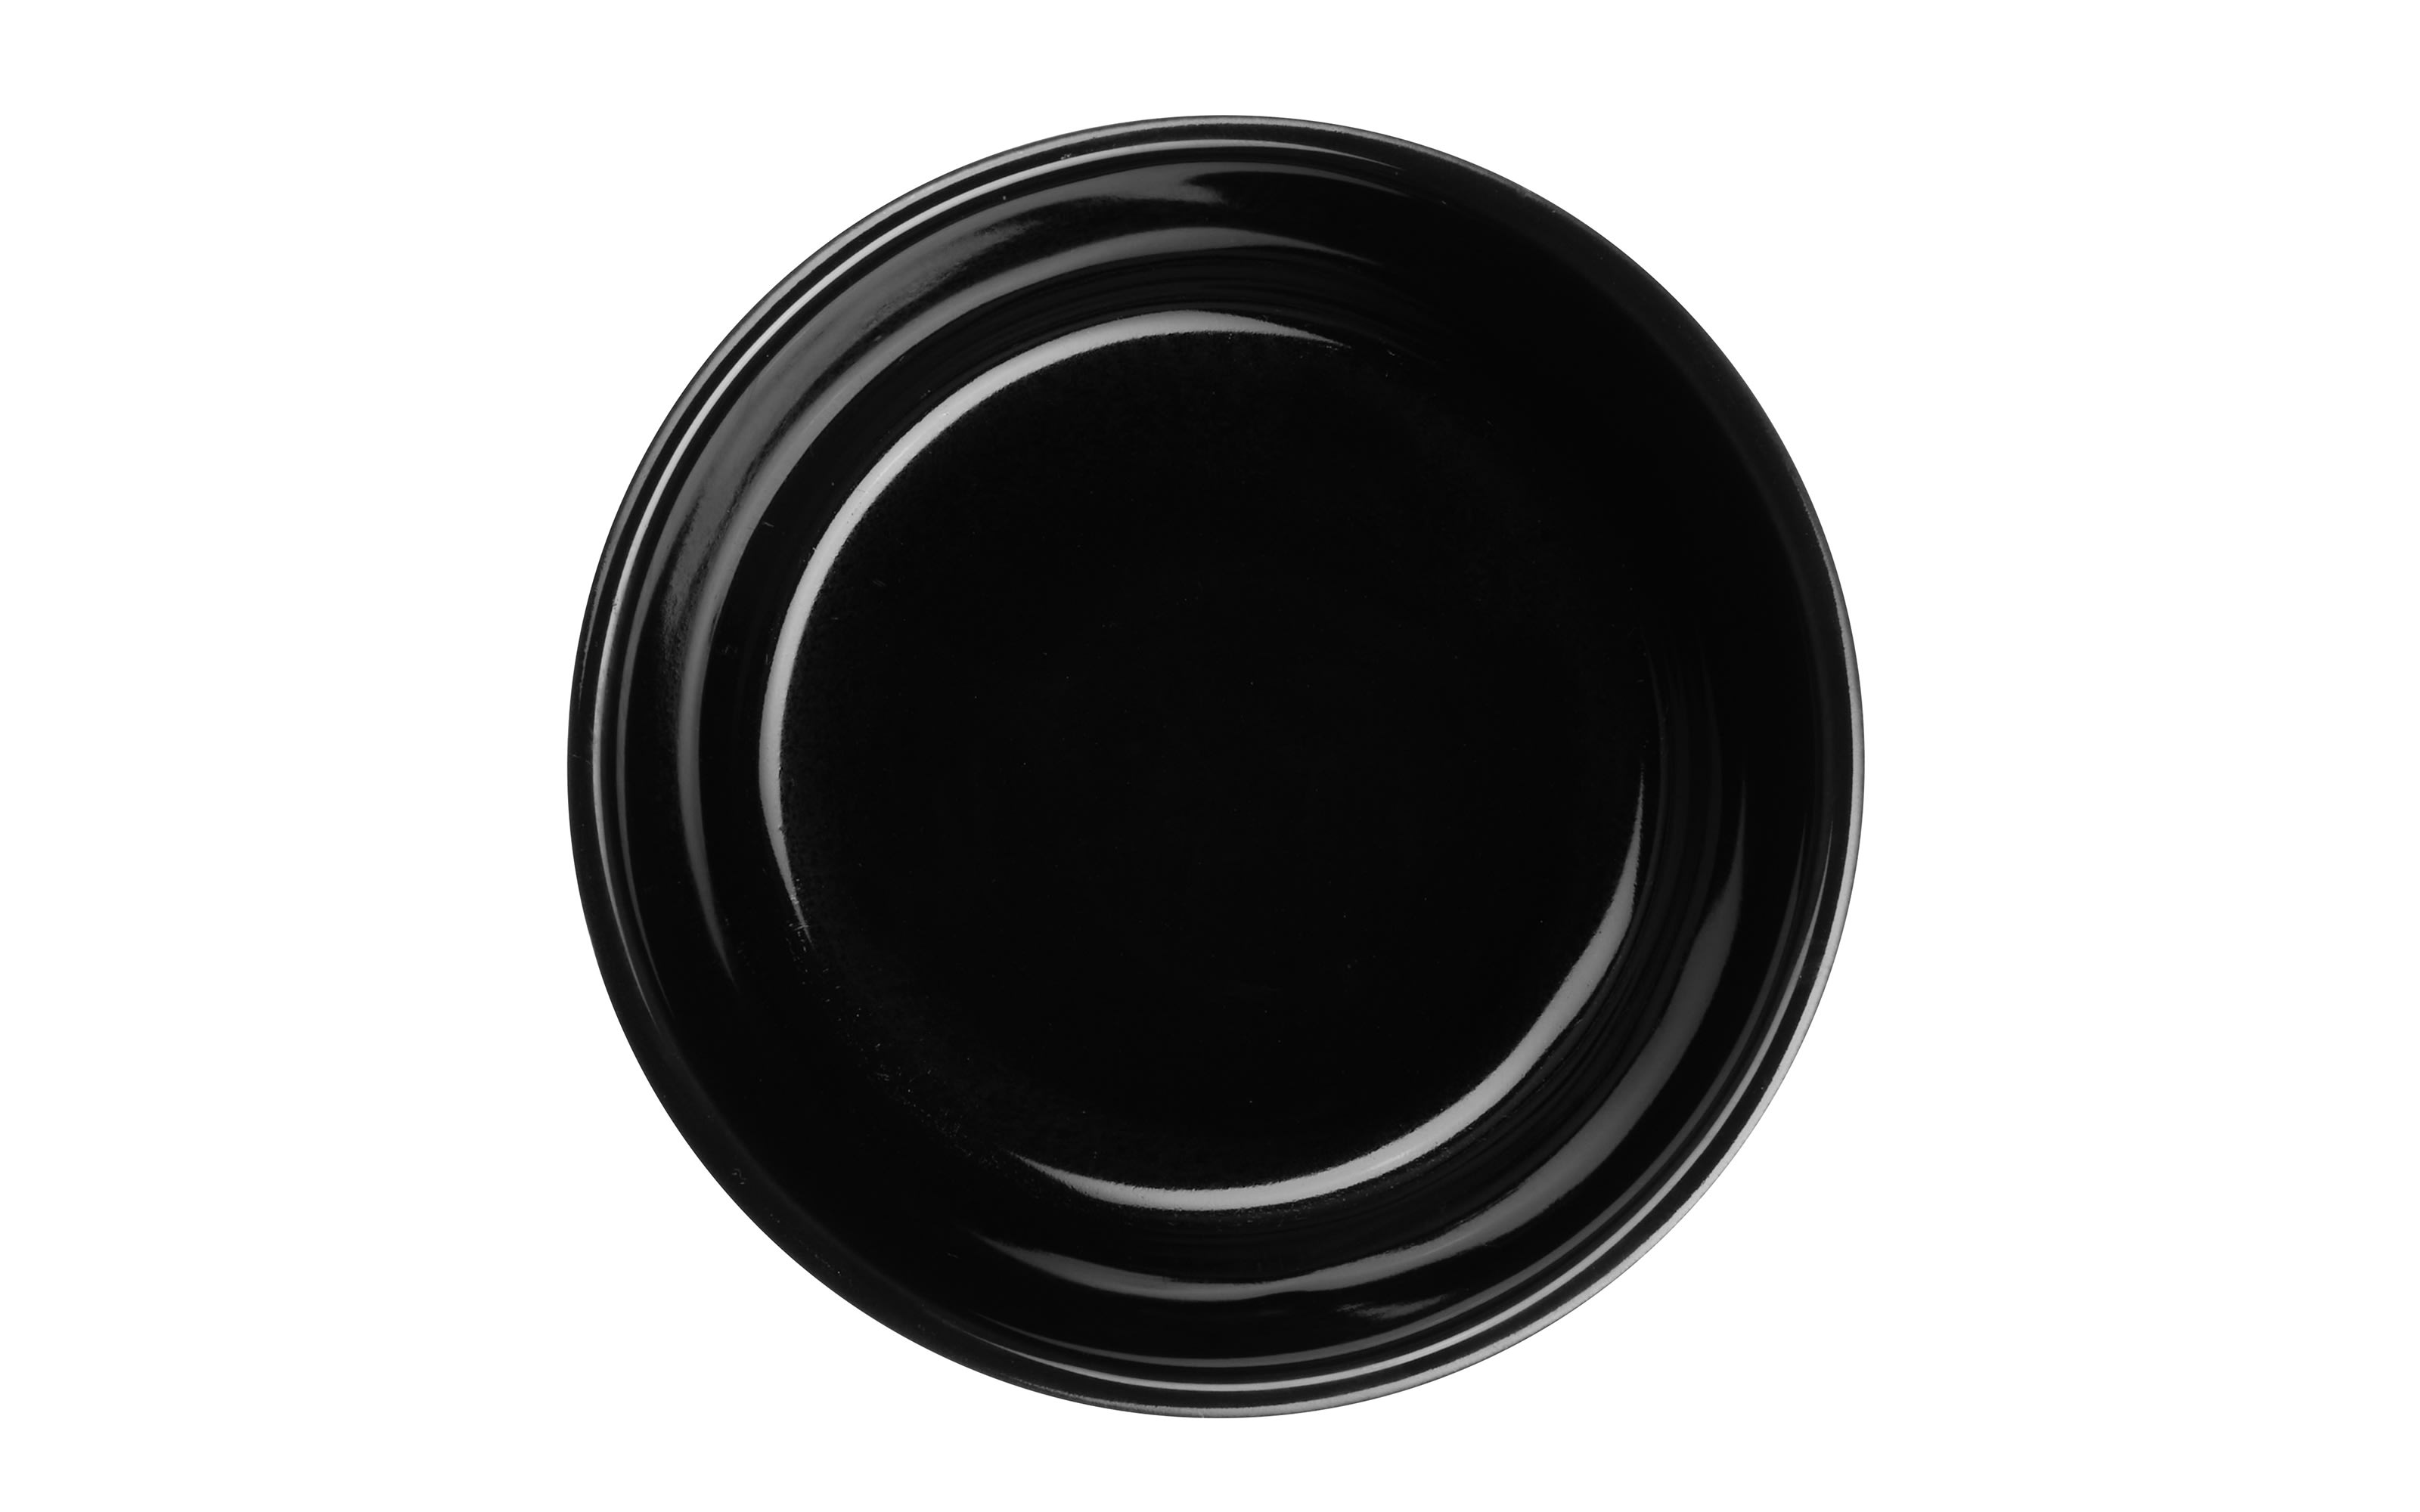 Auflaufform kitchen'art, black, 11 cm